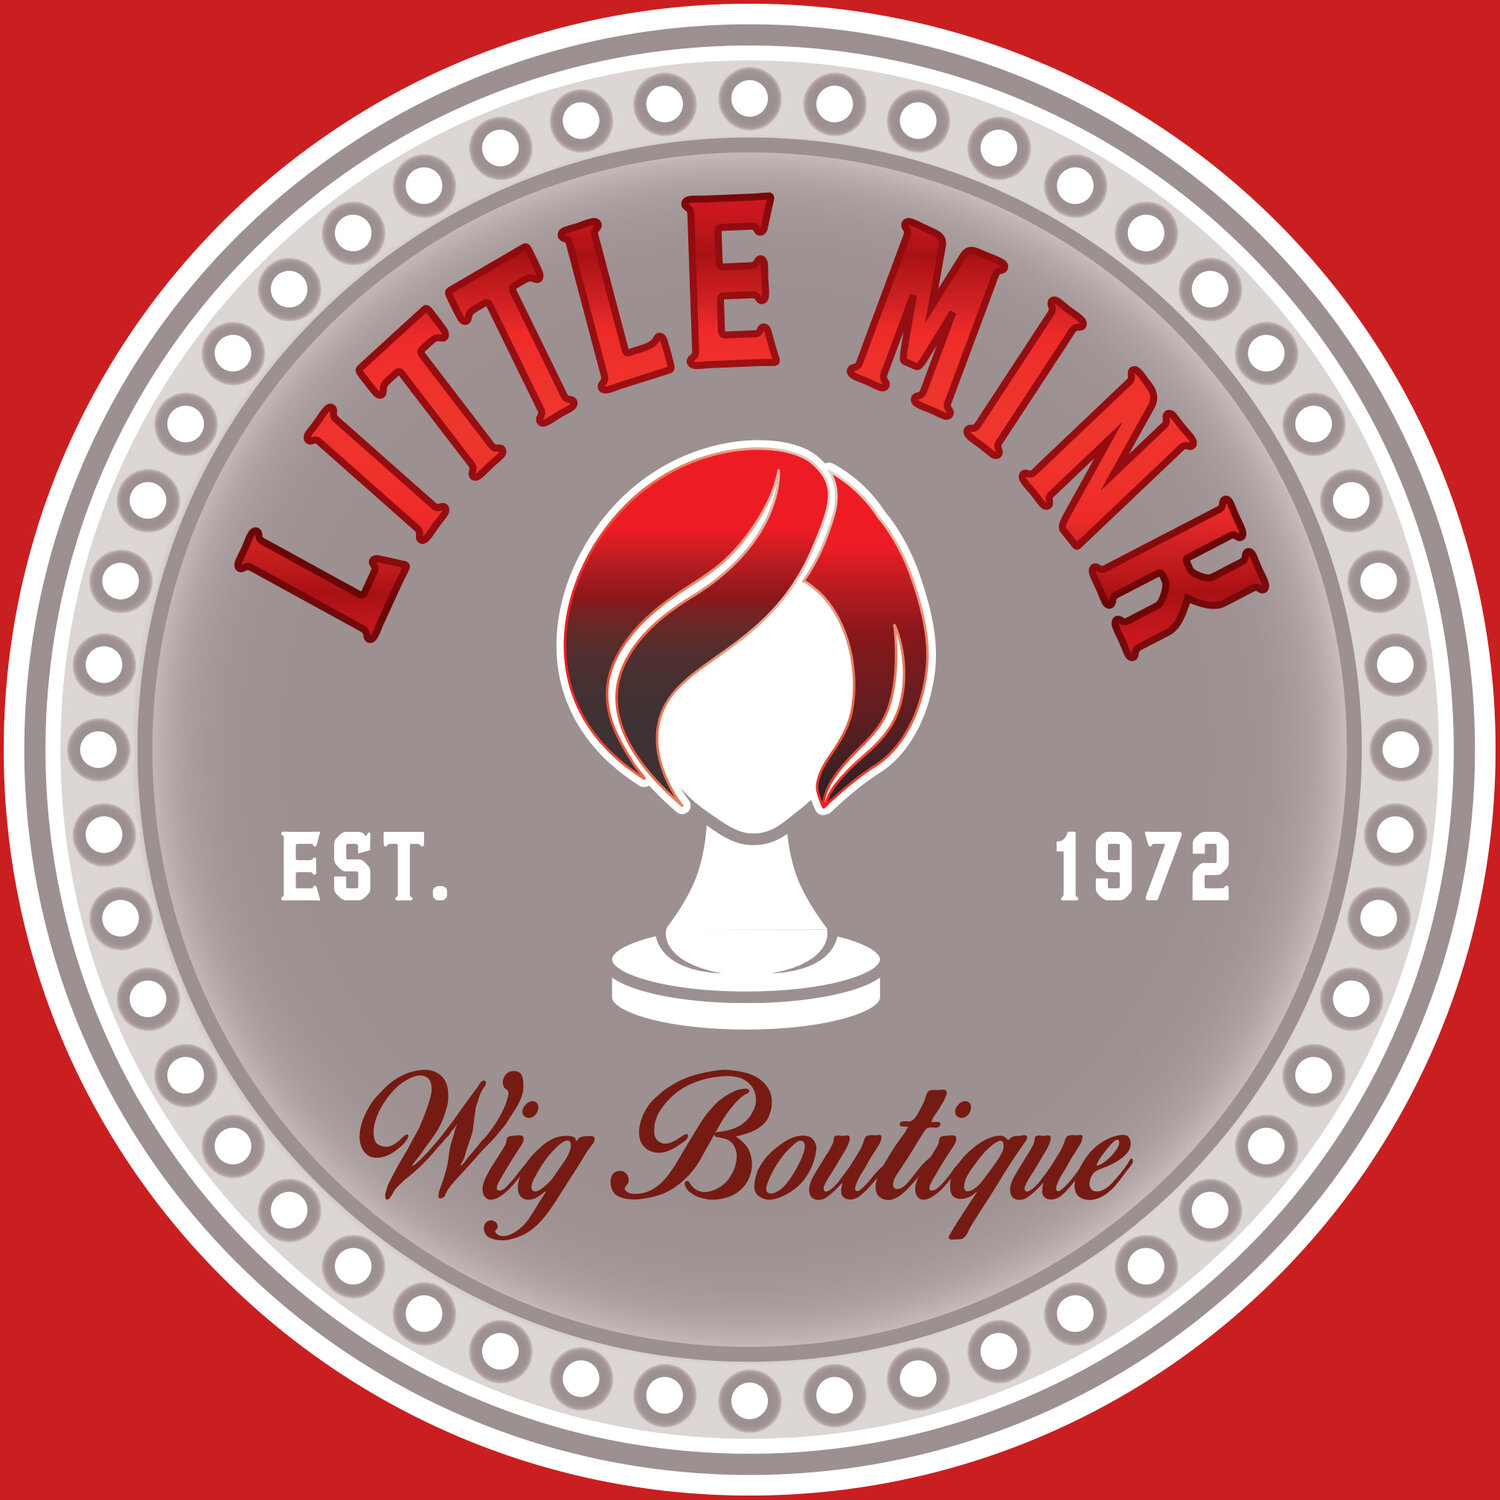 Little Mink Boutique